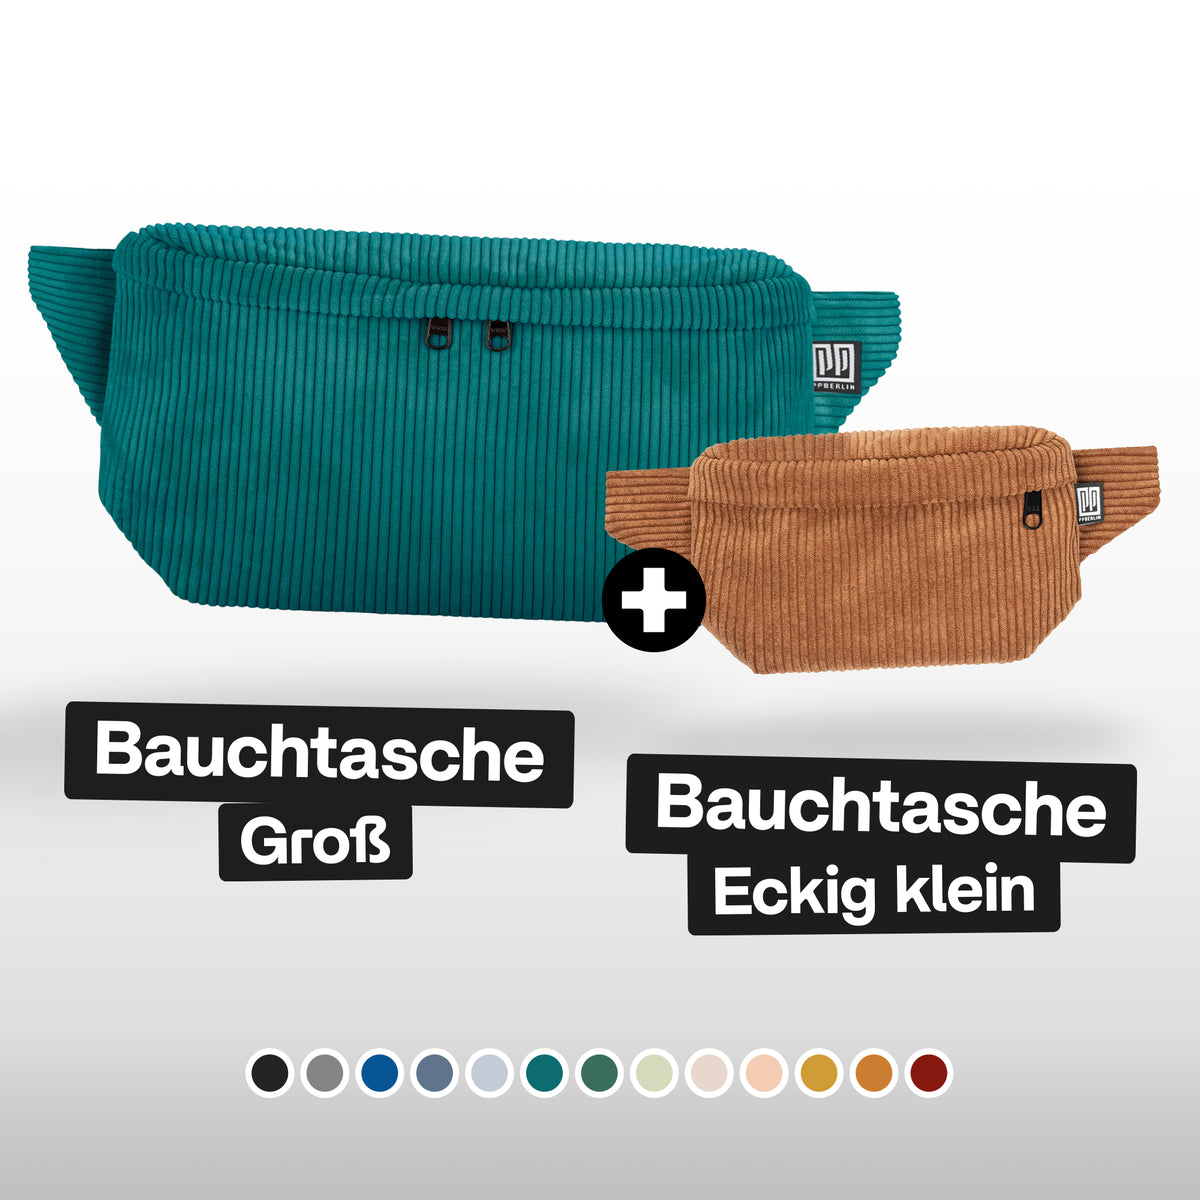 Bauchtaschen Bundle "Groß & Eckig Klein"